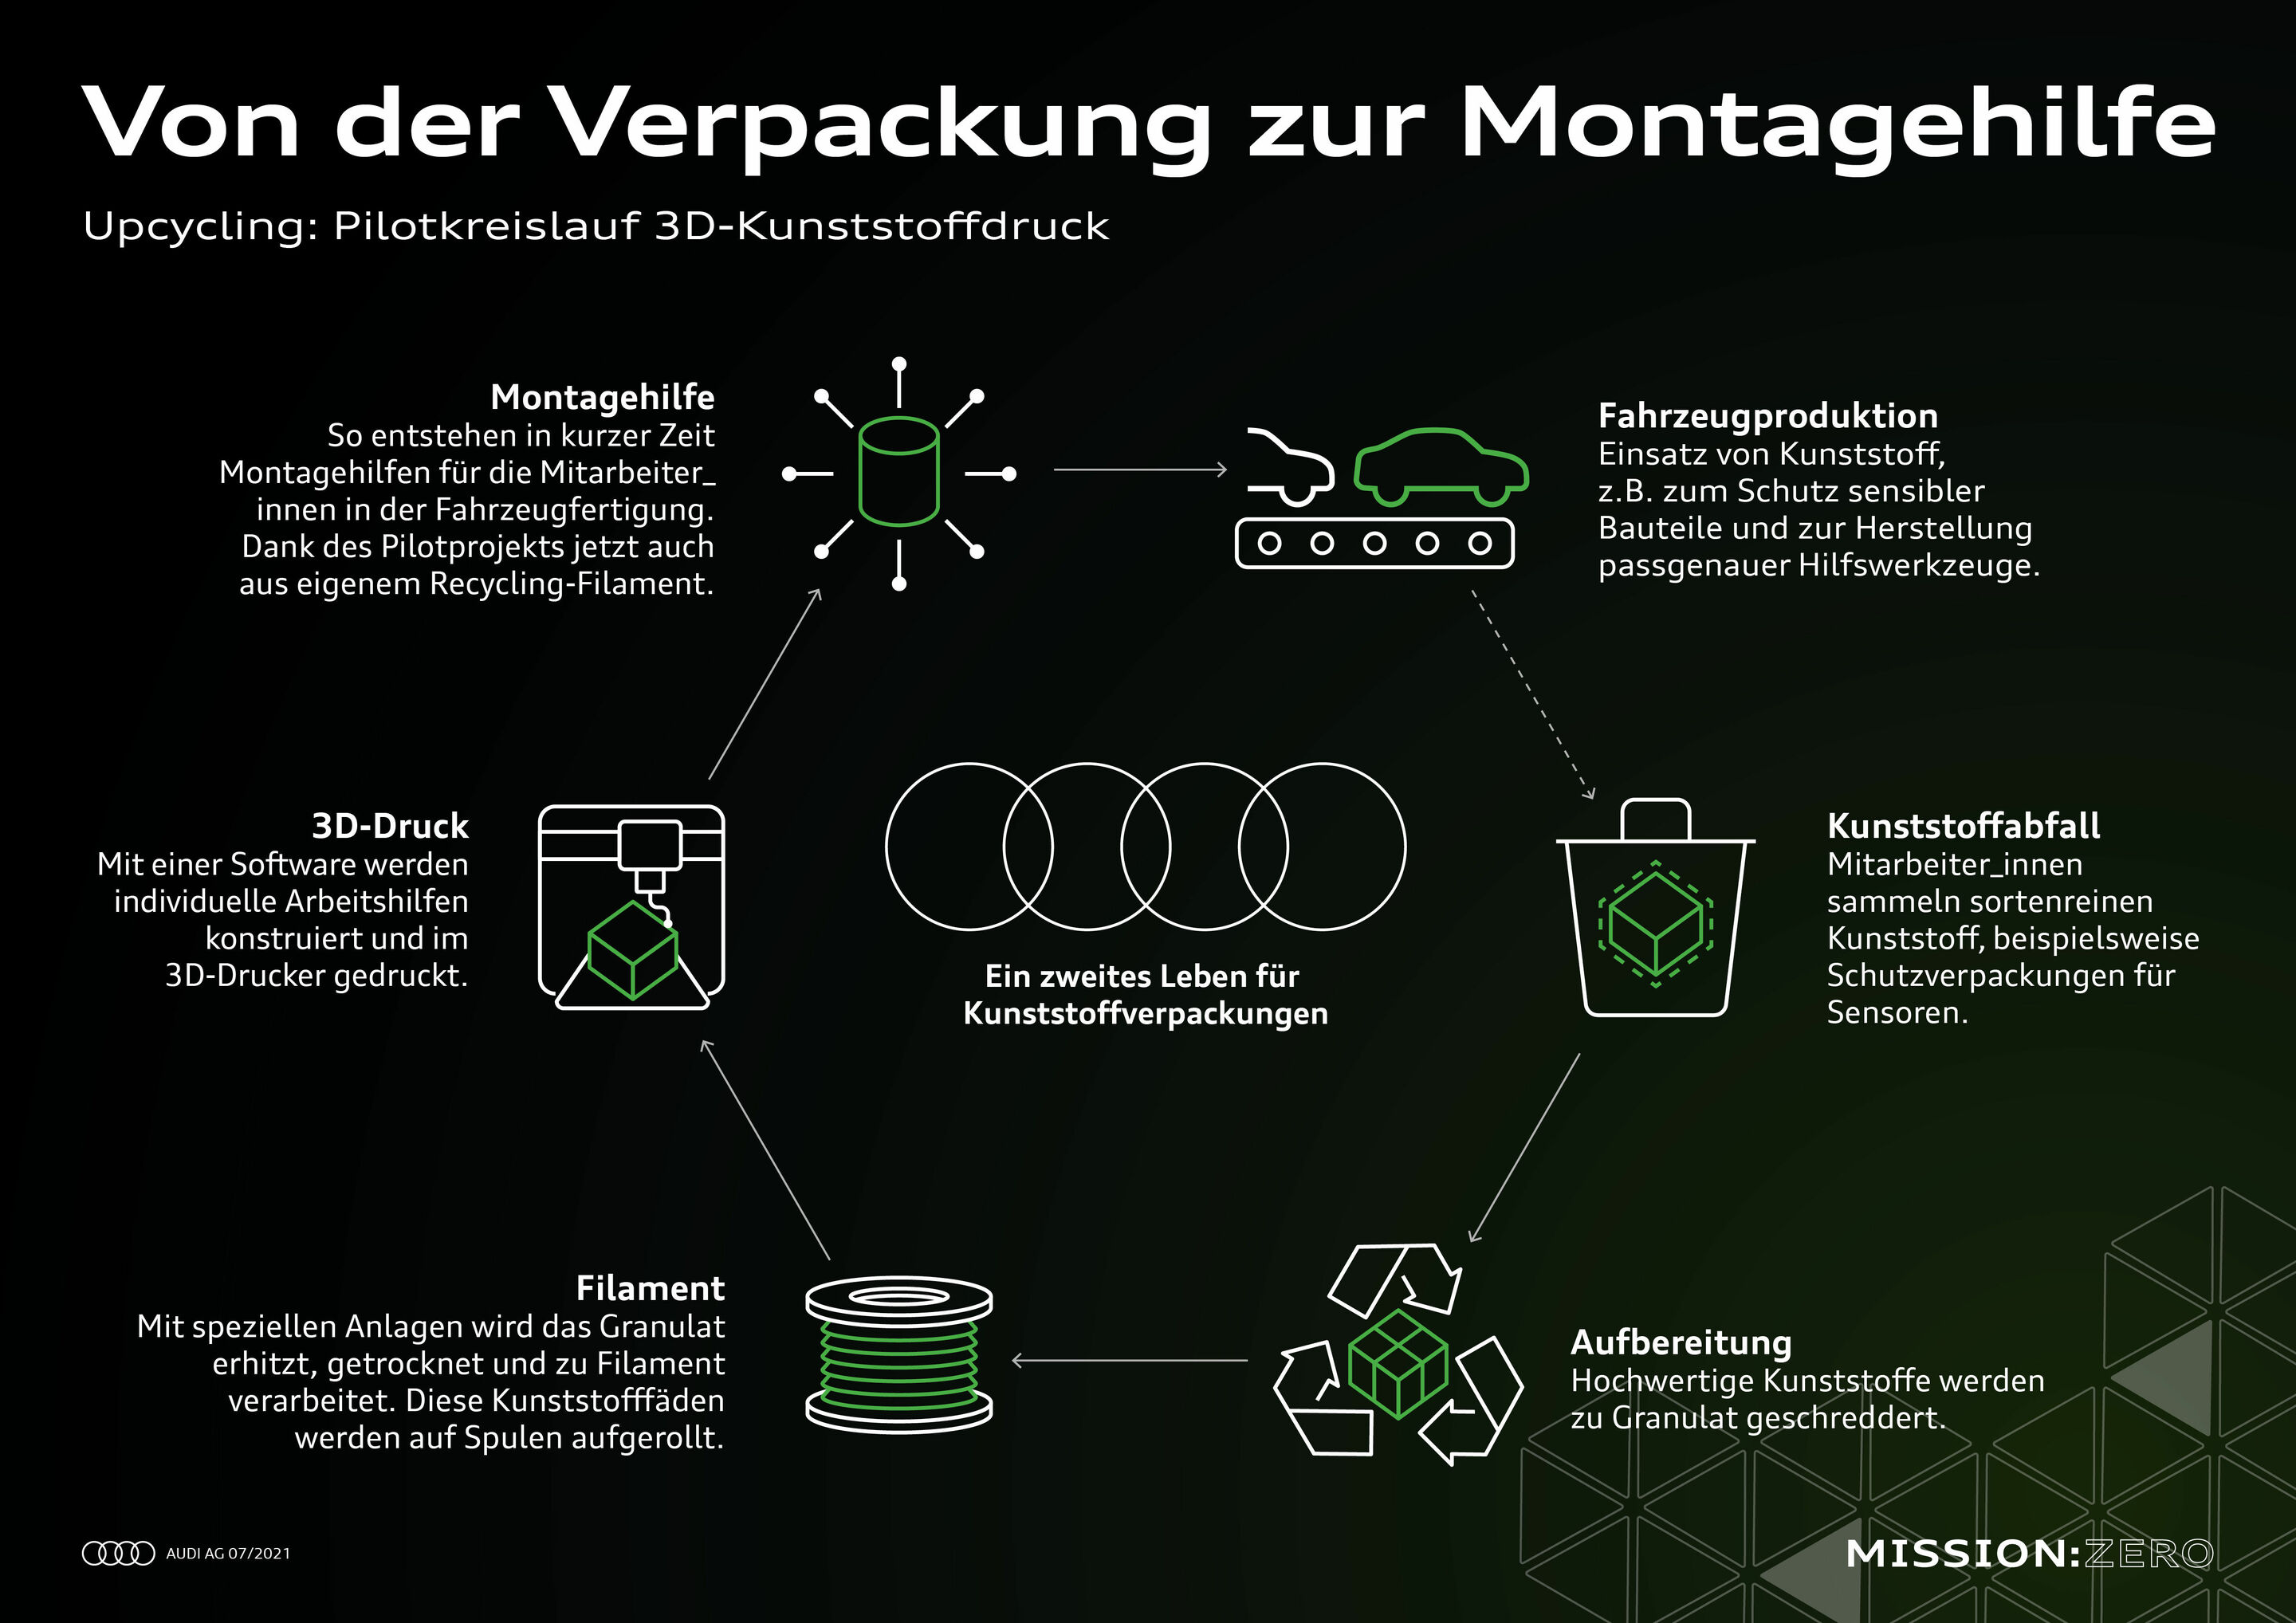 Mission:Zero am Standort Neckarsulm: Audi gestaltet die Zukunft der Produktion konsequent nachhaltig